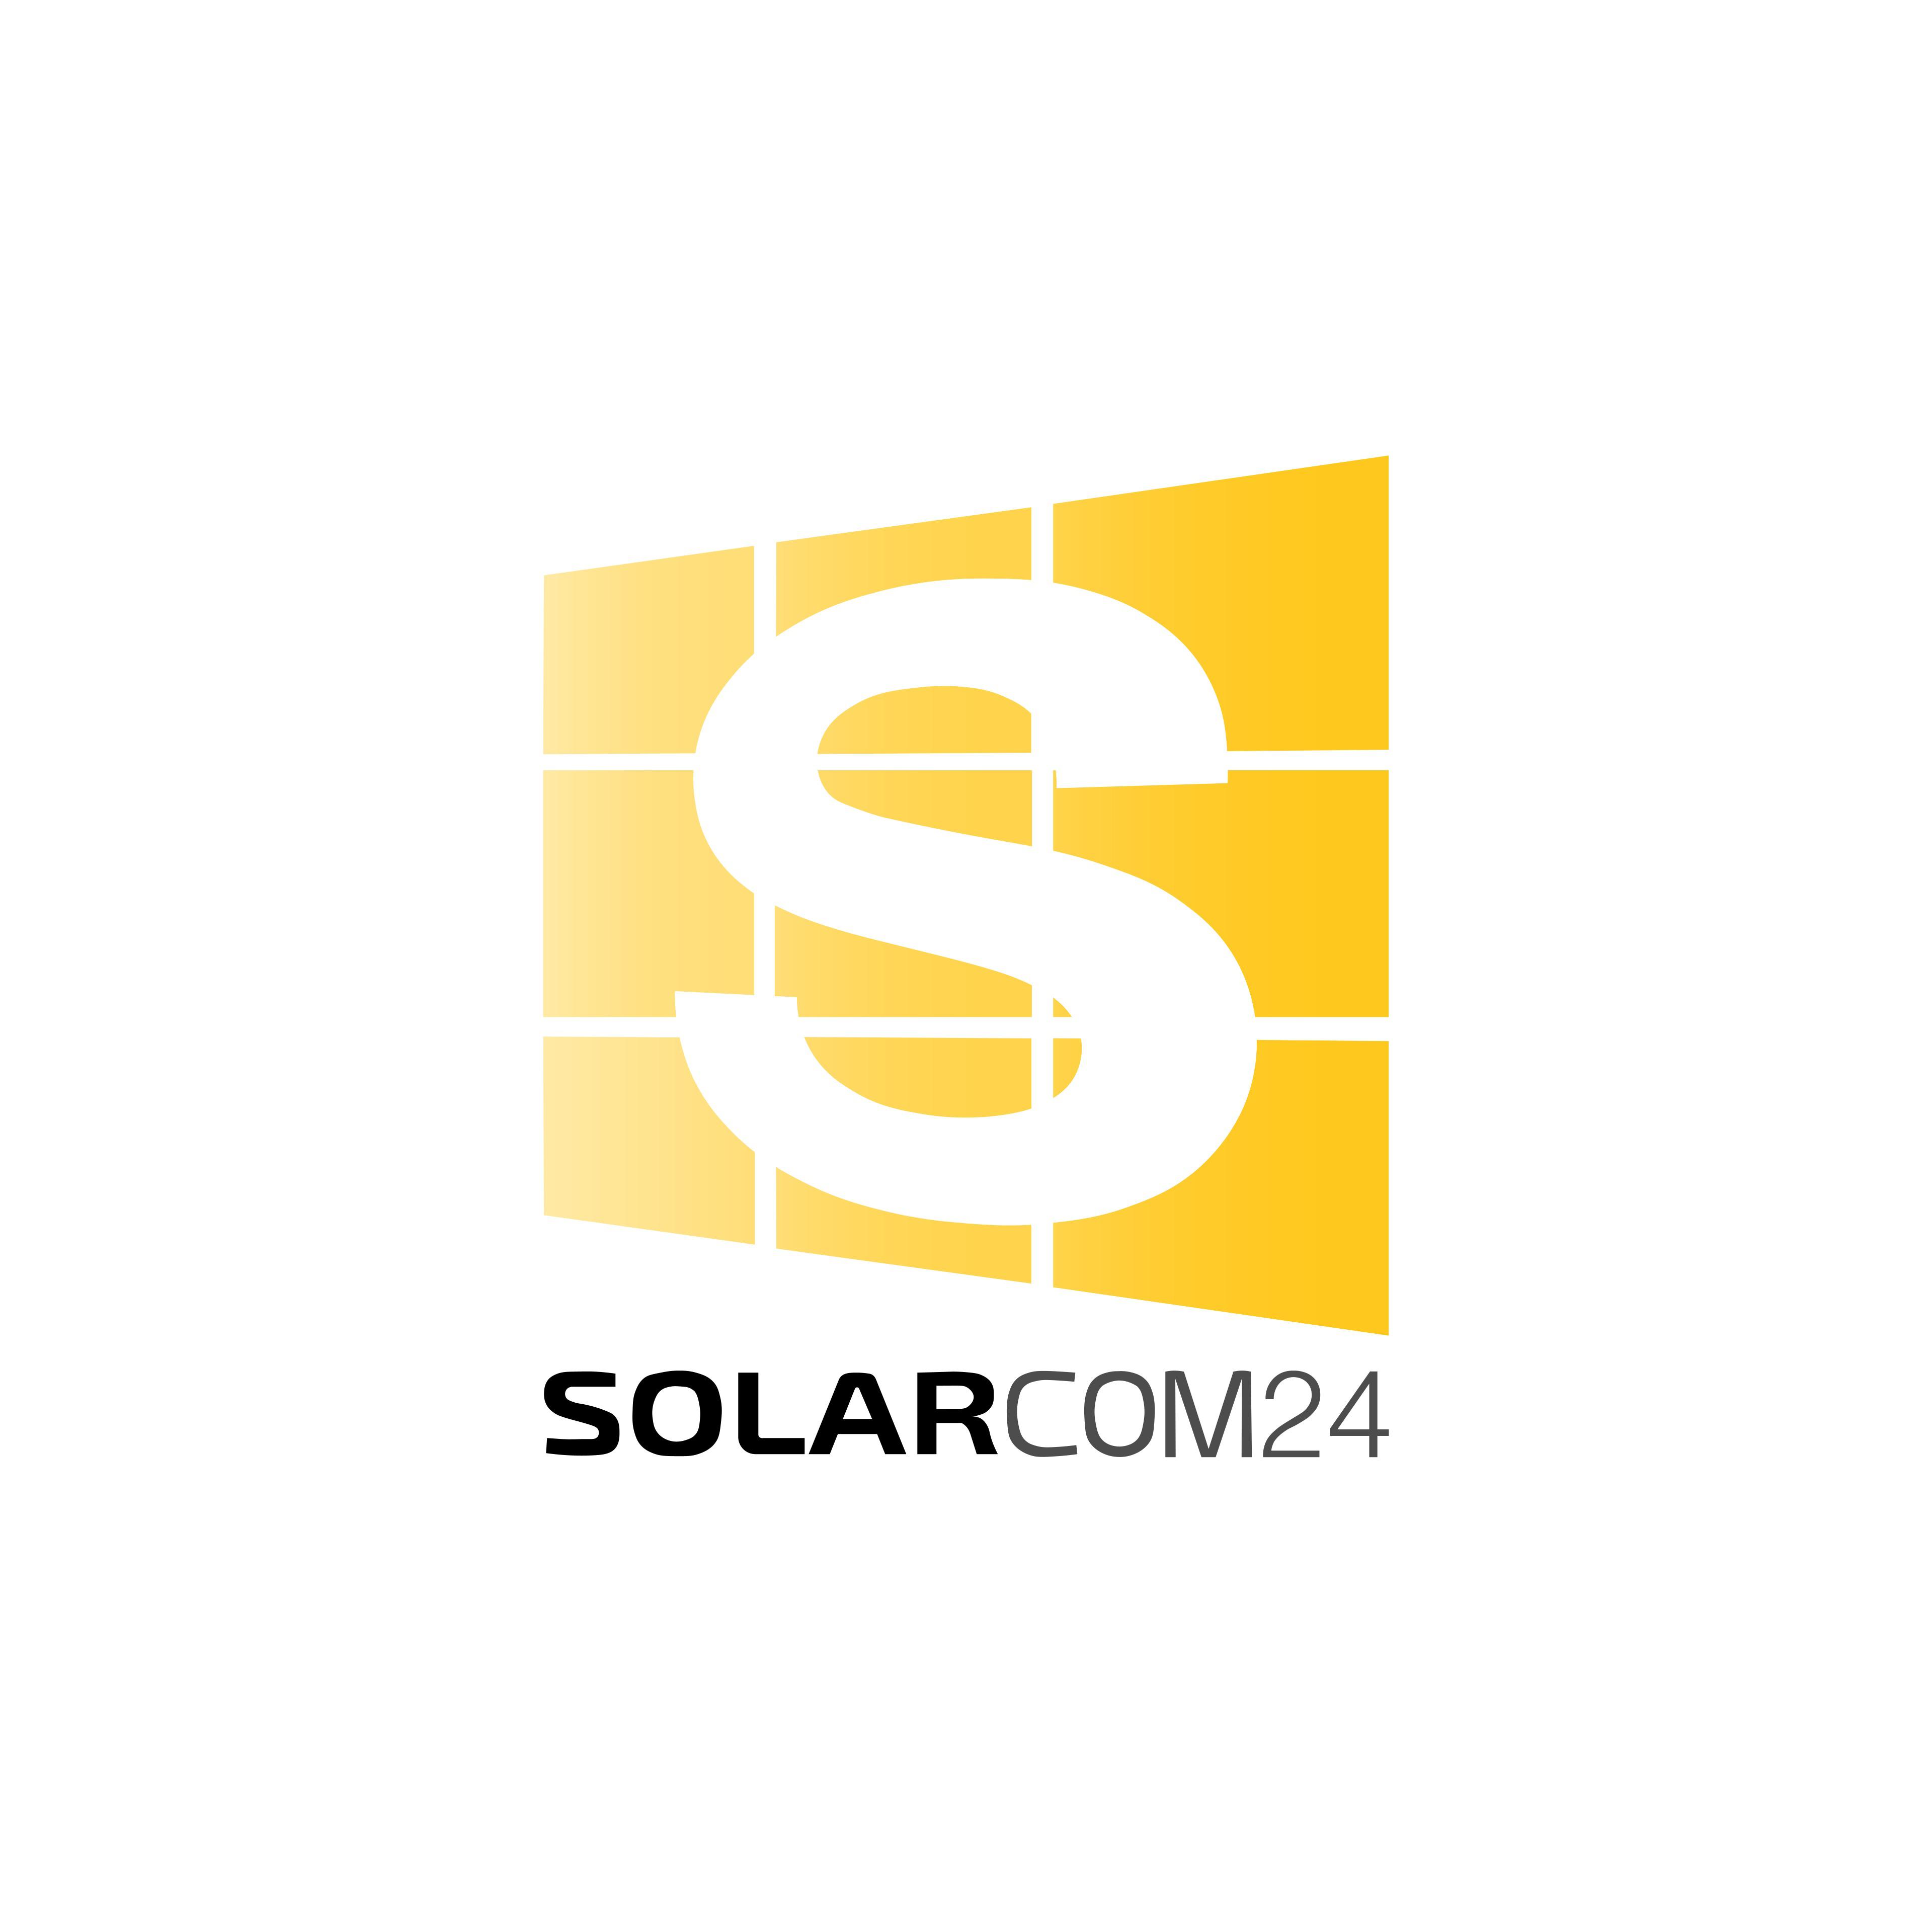 Solarcom24 in Wildau - Logo